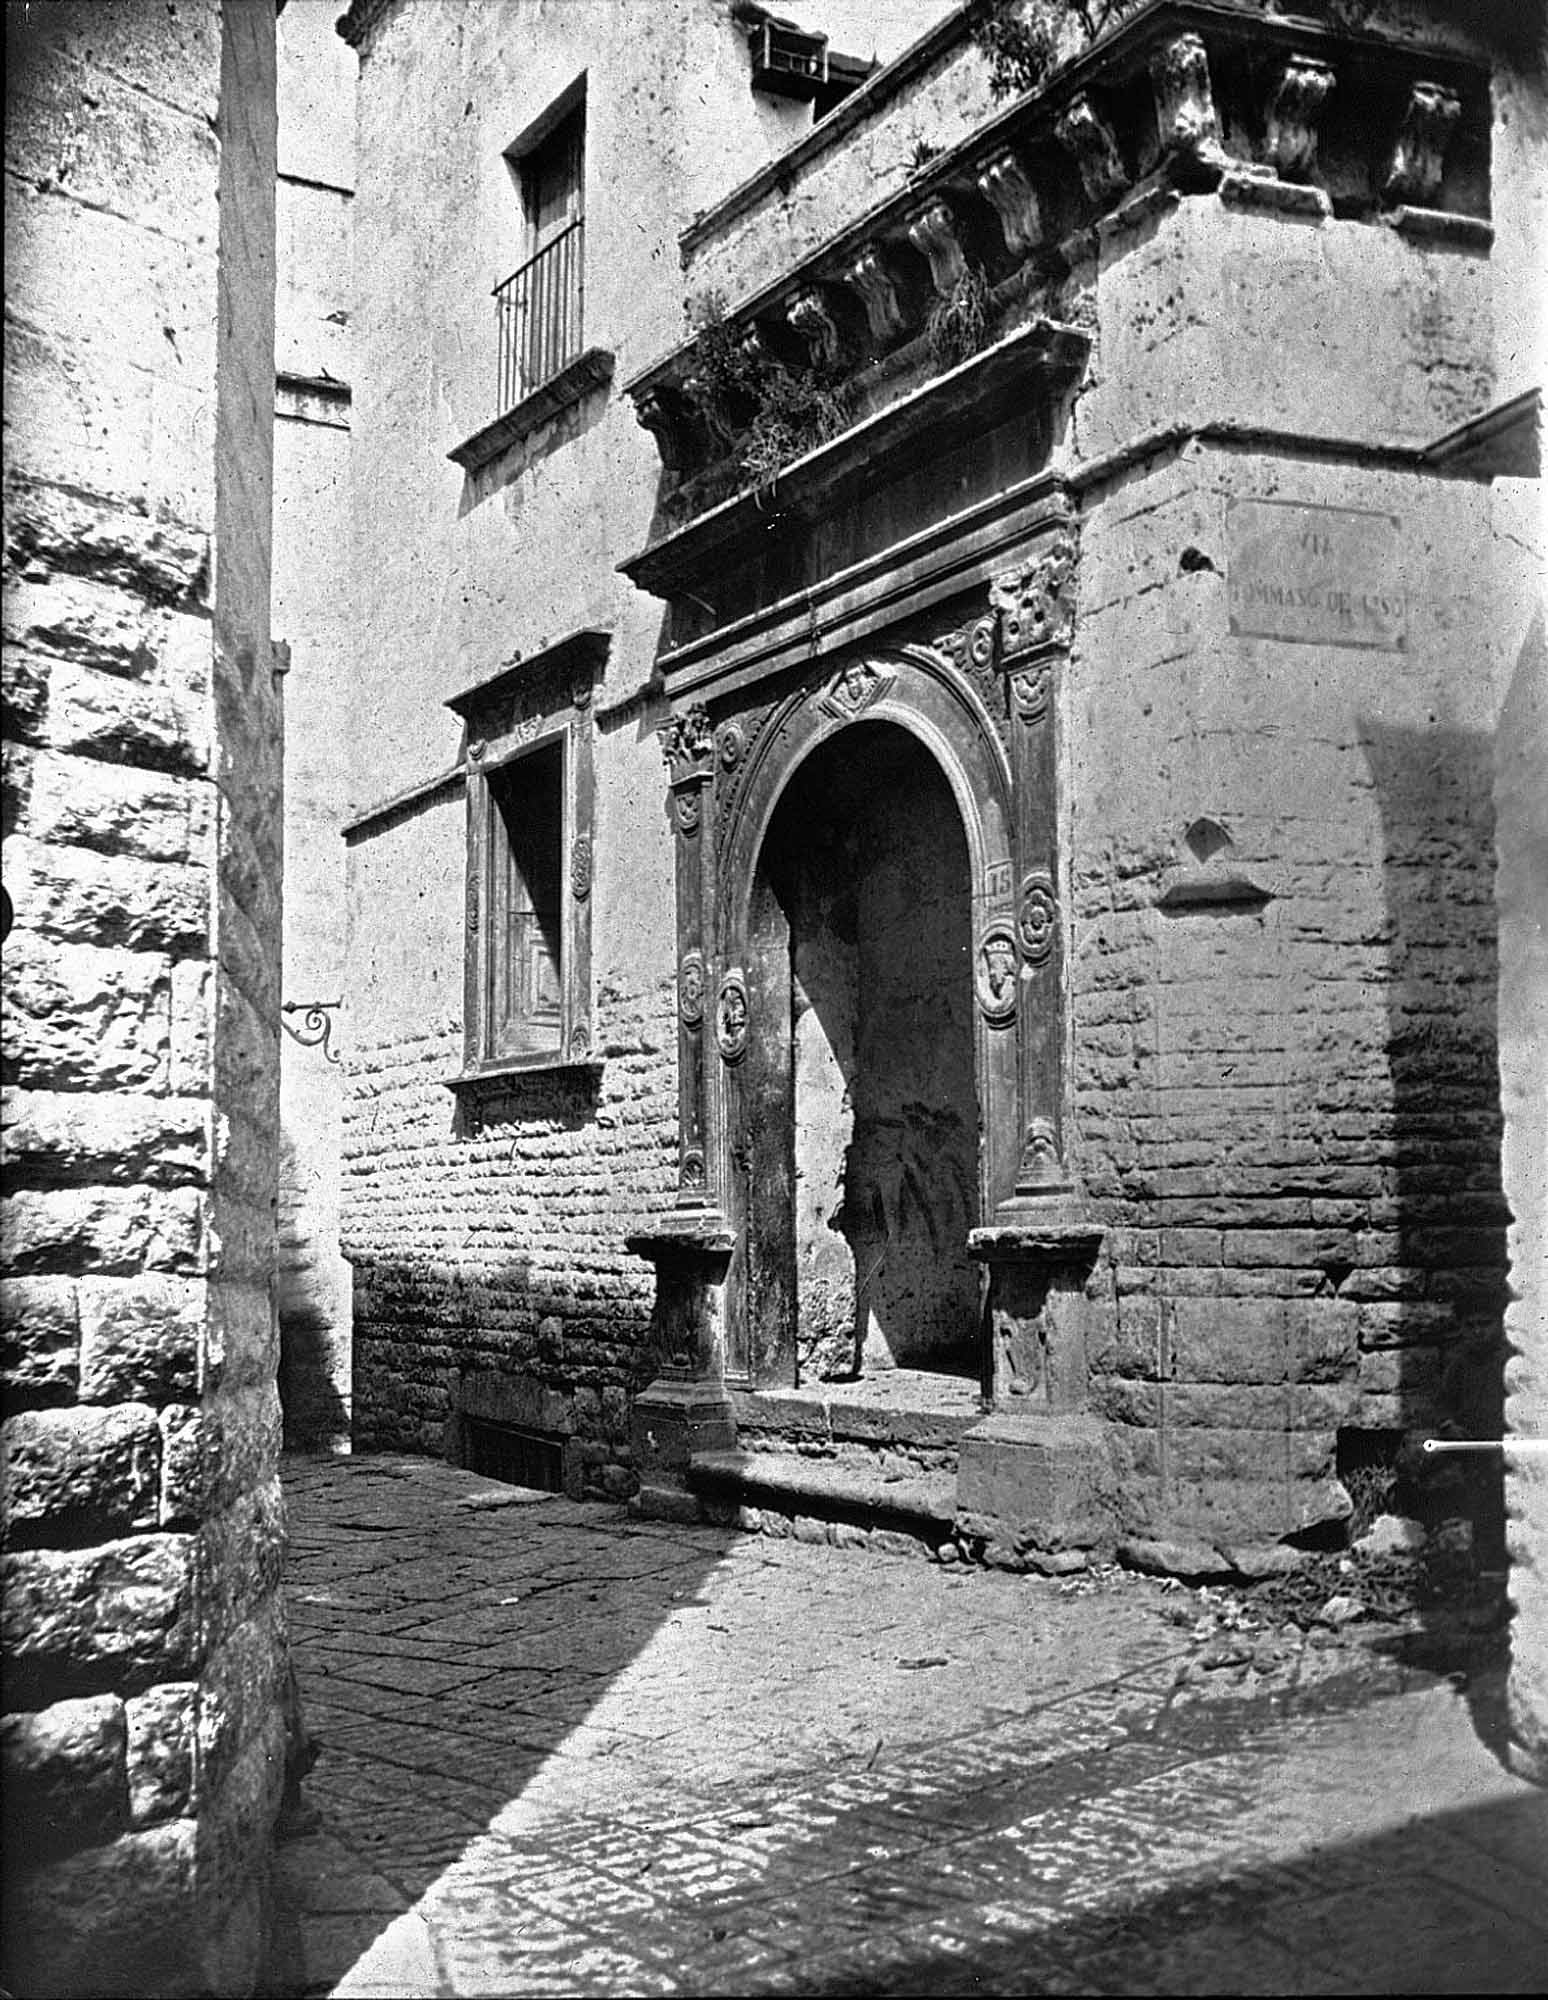 Palazzo tra Via Petusi(Tutino) e Via De Liso, in "Cento Citt d'Italia" del 1898